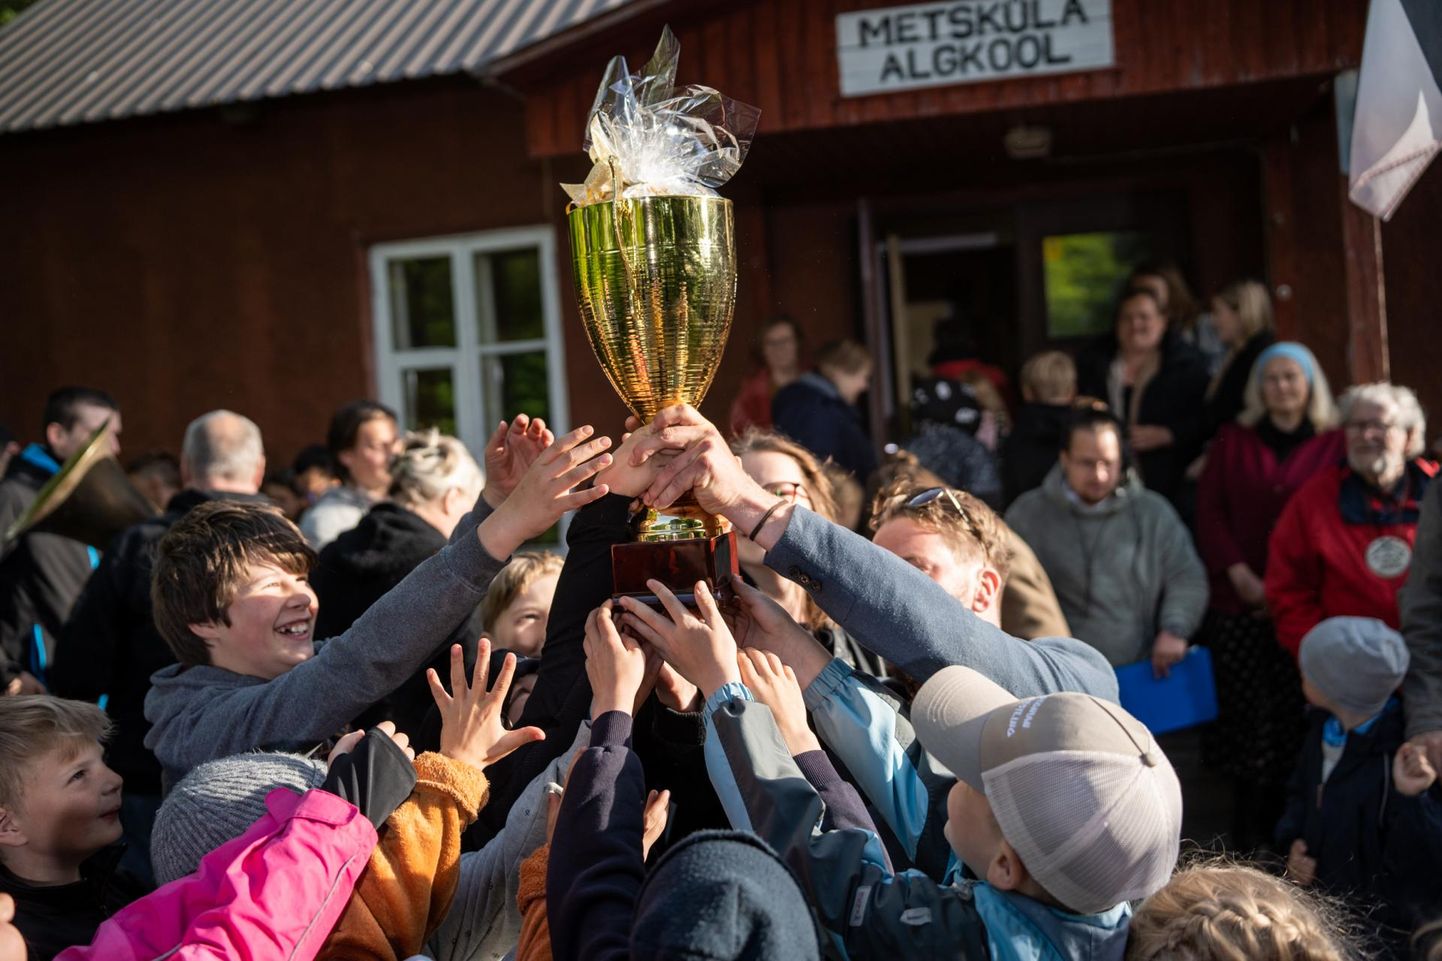 Tänavu juunis sai Metsküla algkool aasta kooli tiitli, kuid paneb praeguse seisuga Lääneranna vallavolikogu otsusel sellest sügisest uksed kinni.